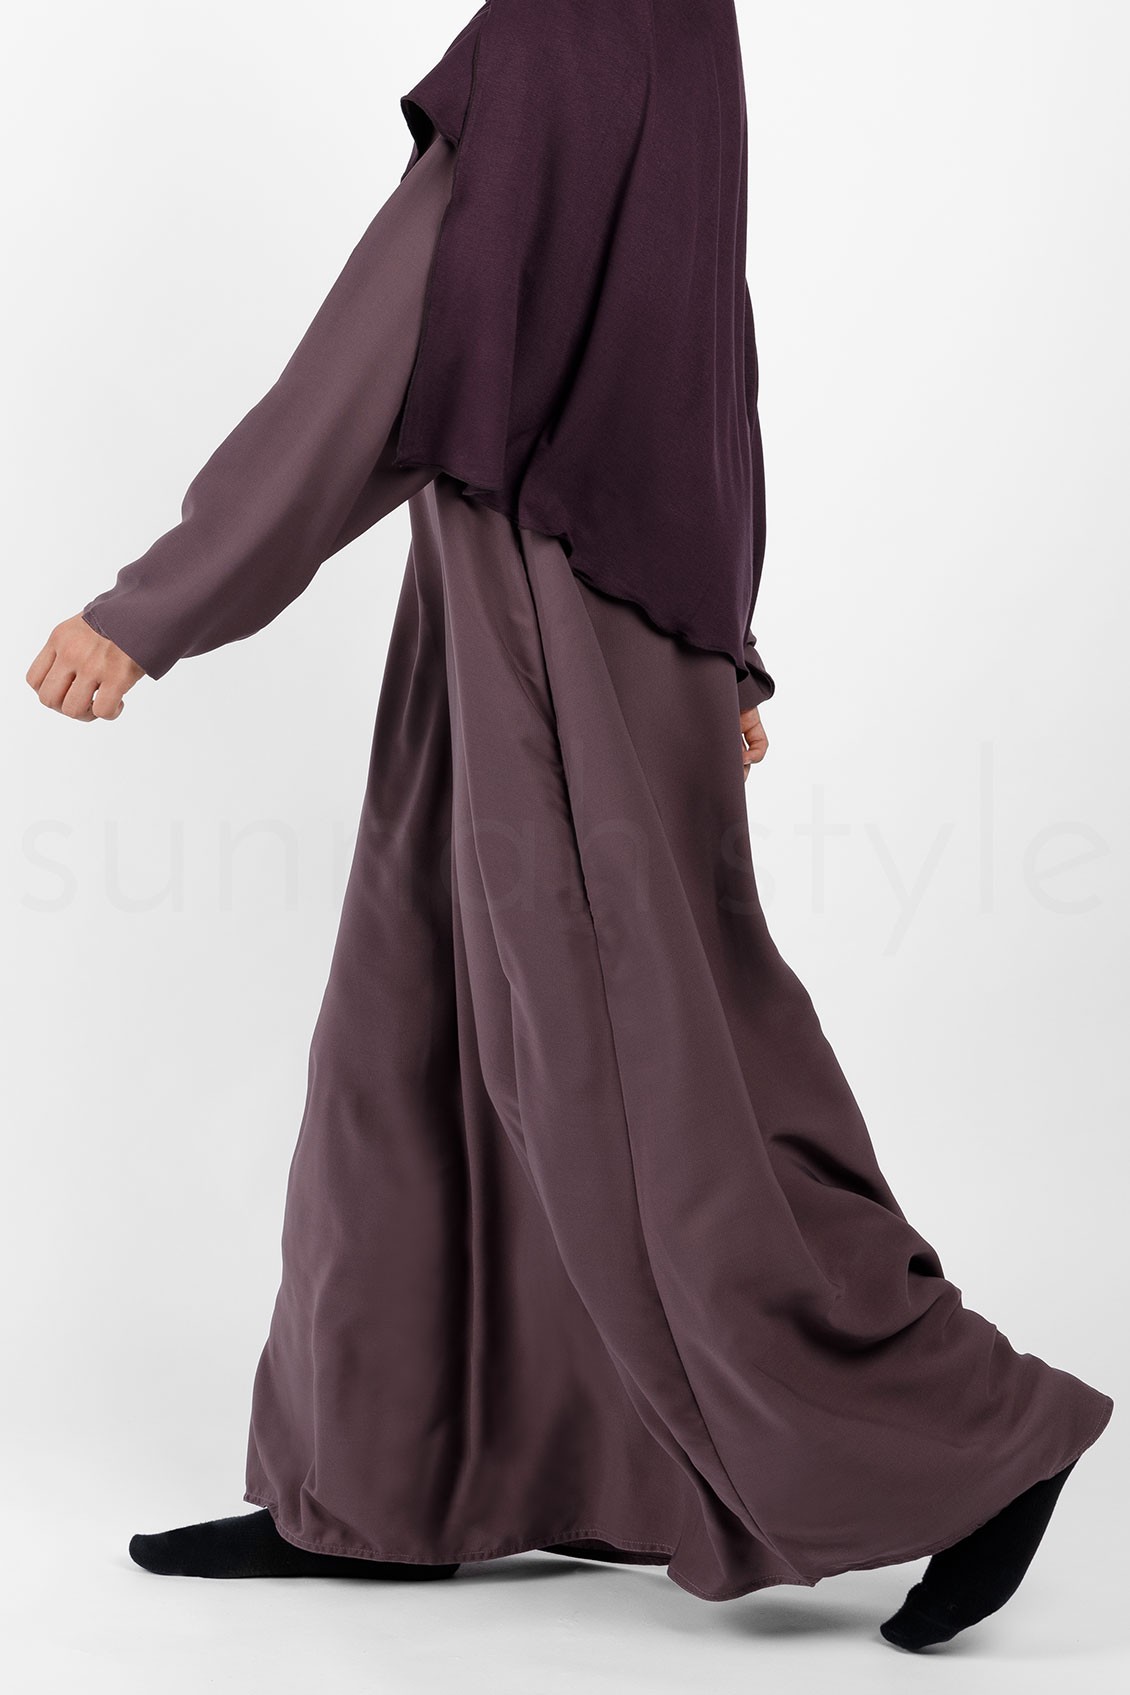 Sunnah Style Plain Closed Abaya Slim Dried Lavender